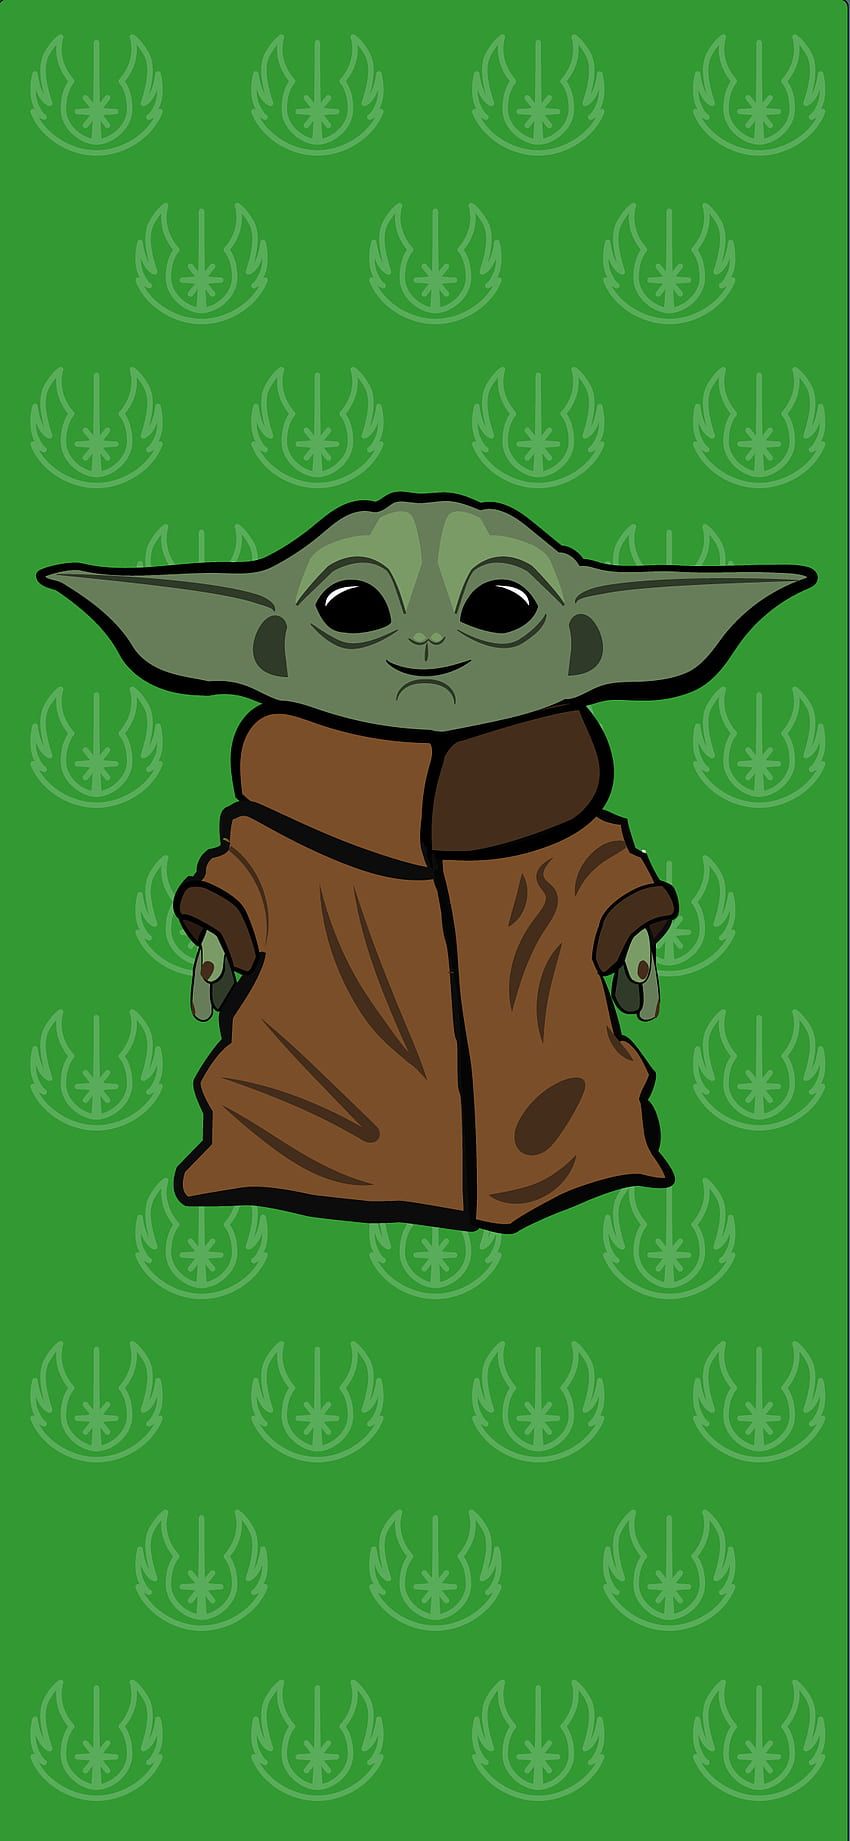 Baby yoda on green background - Baby Yoda